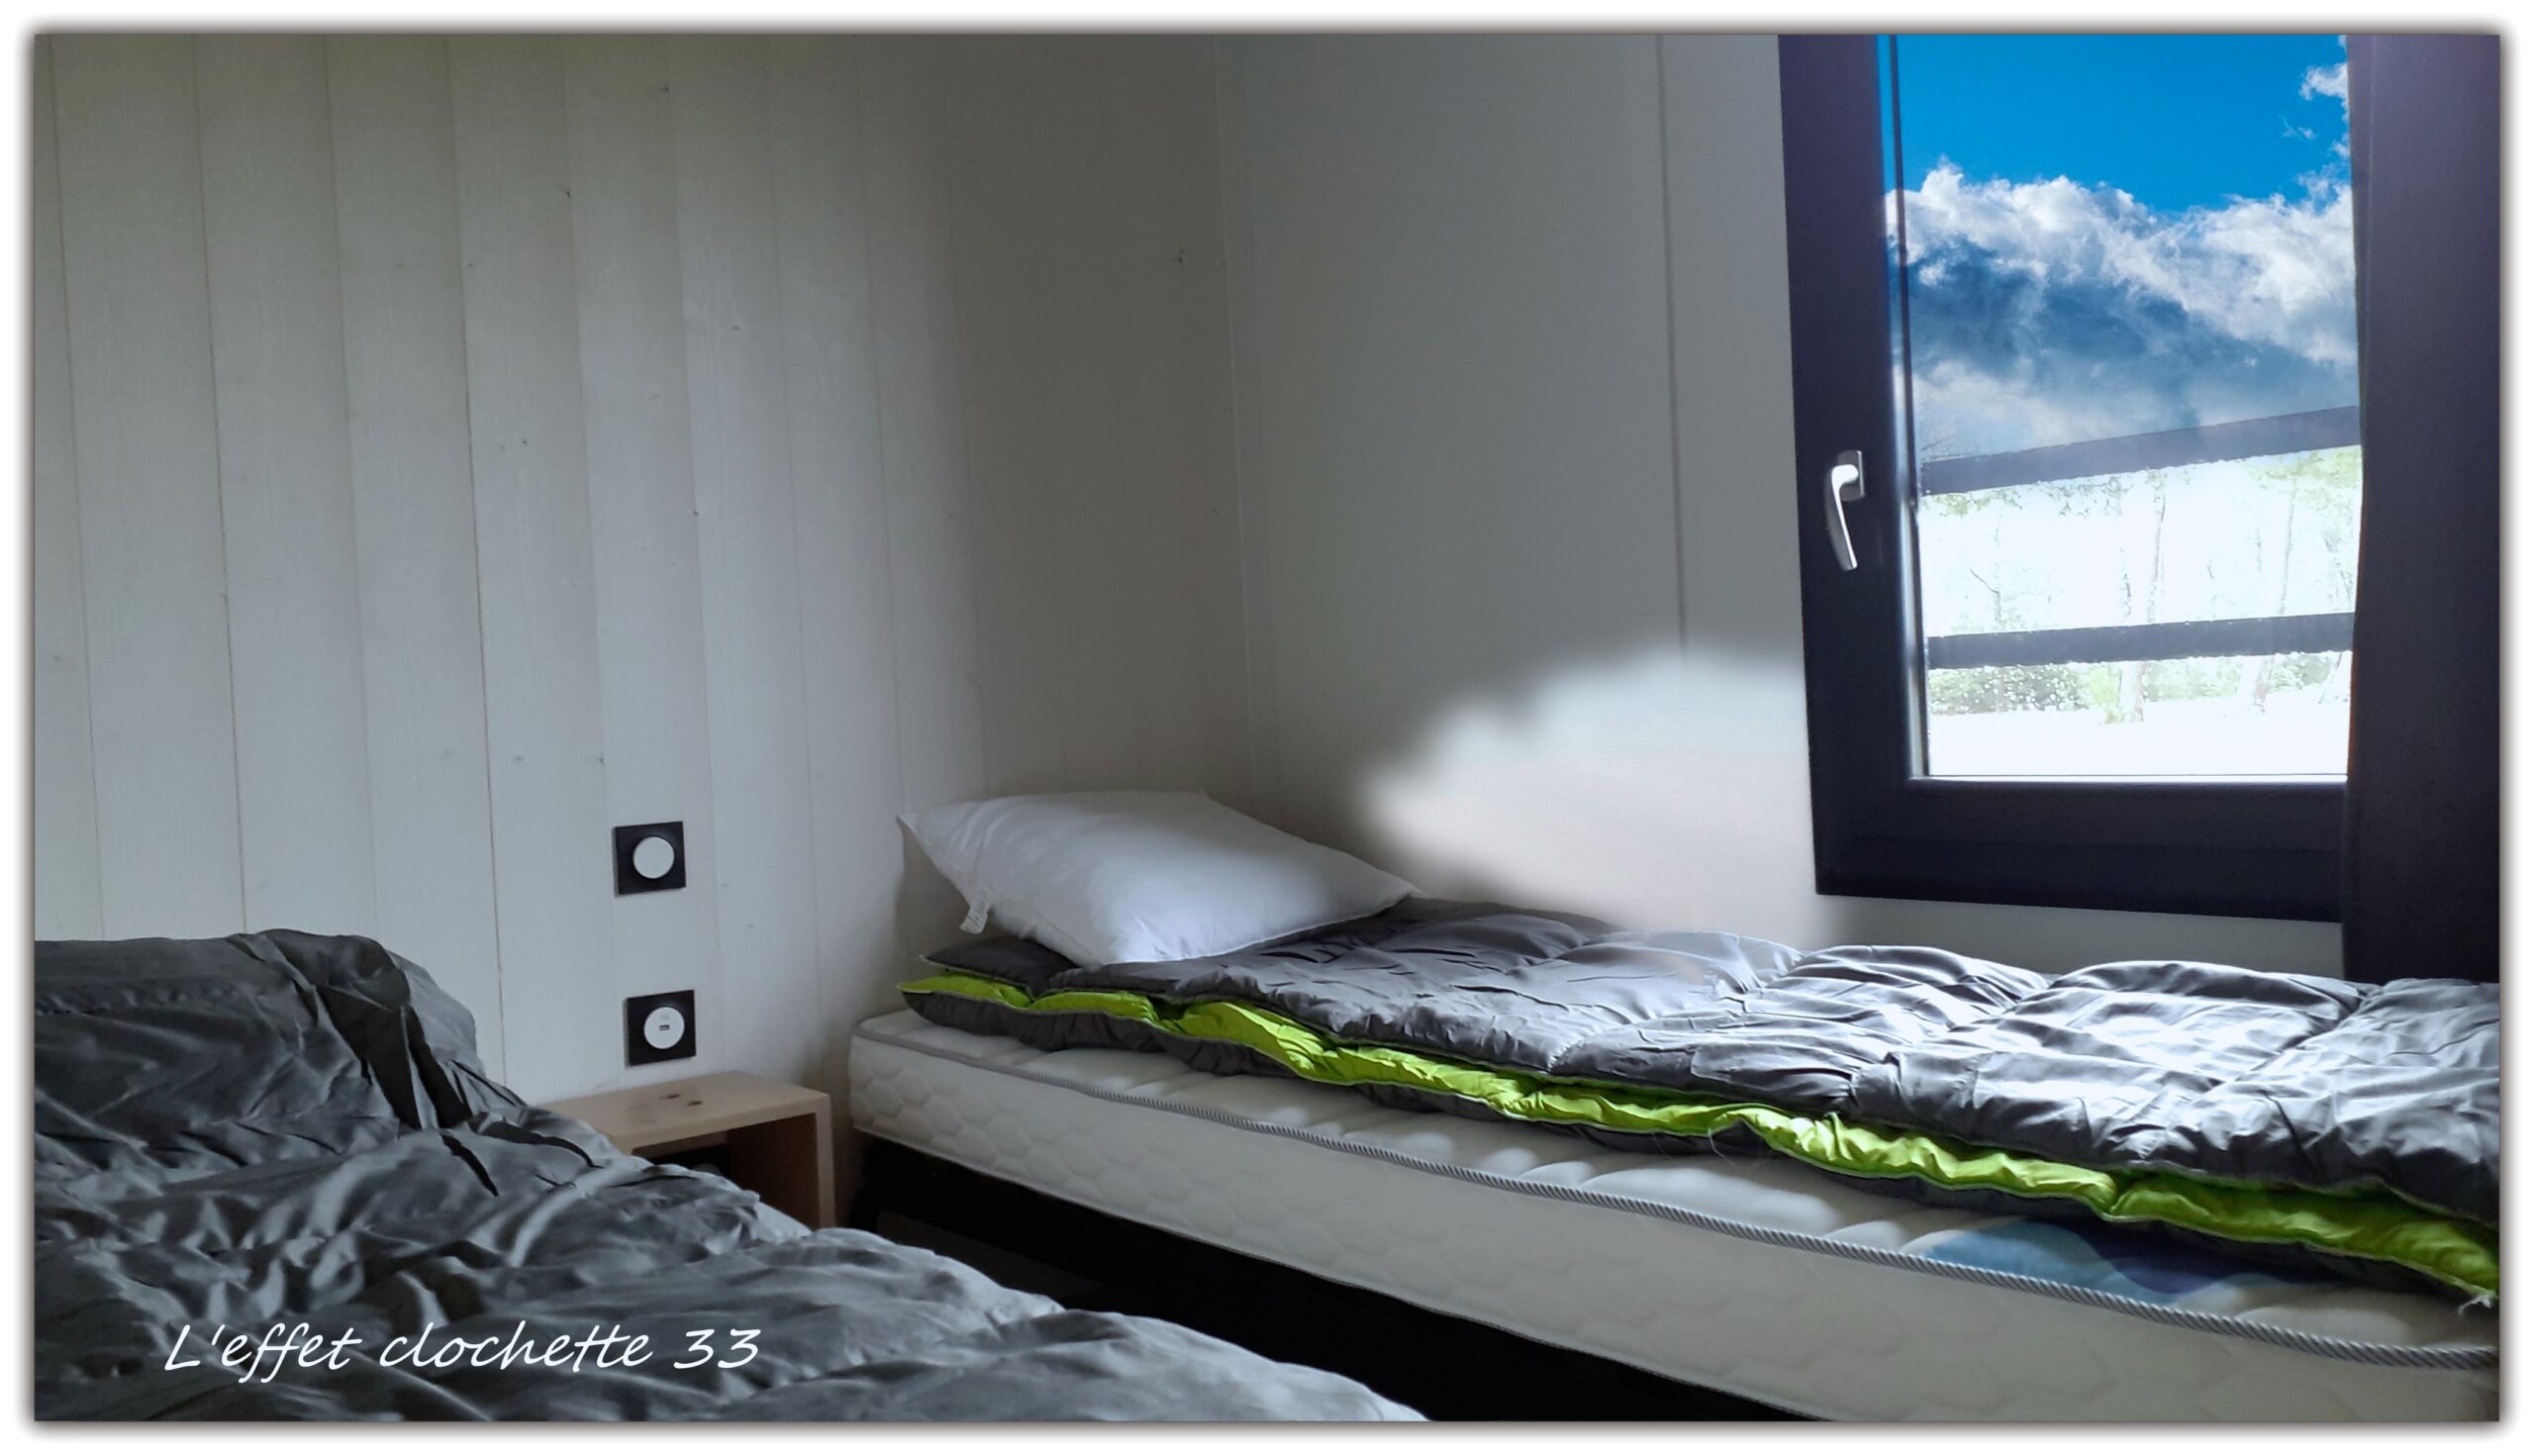 4-chambre 2 petits lits effet clochette conciergerie montalivet